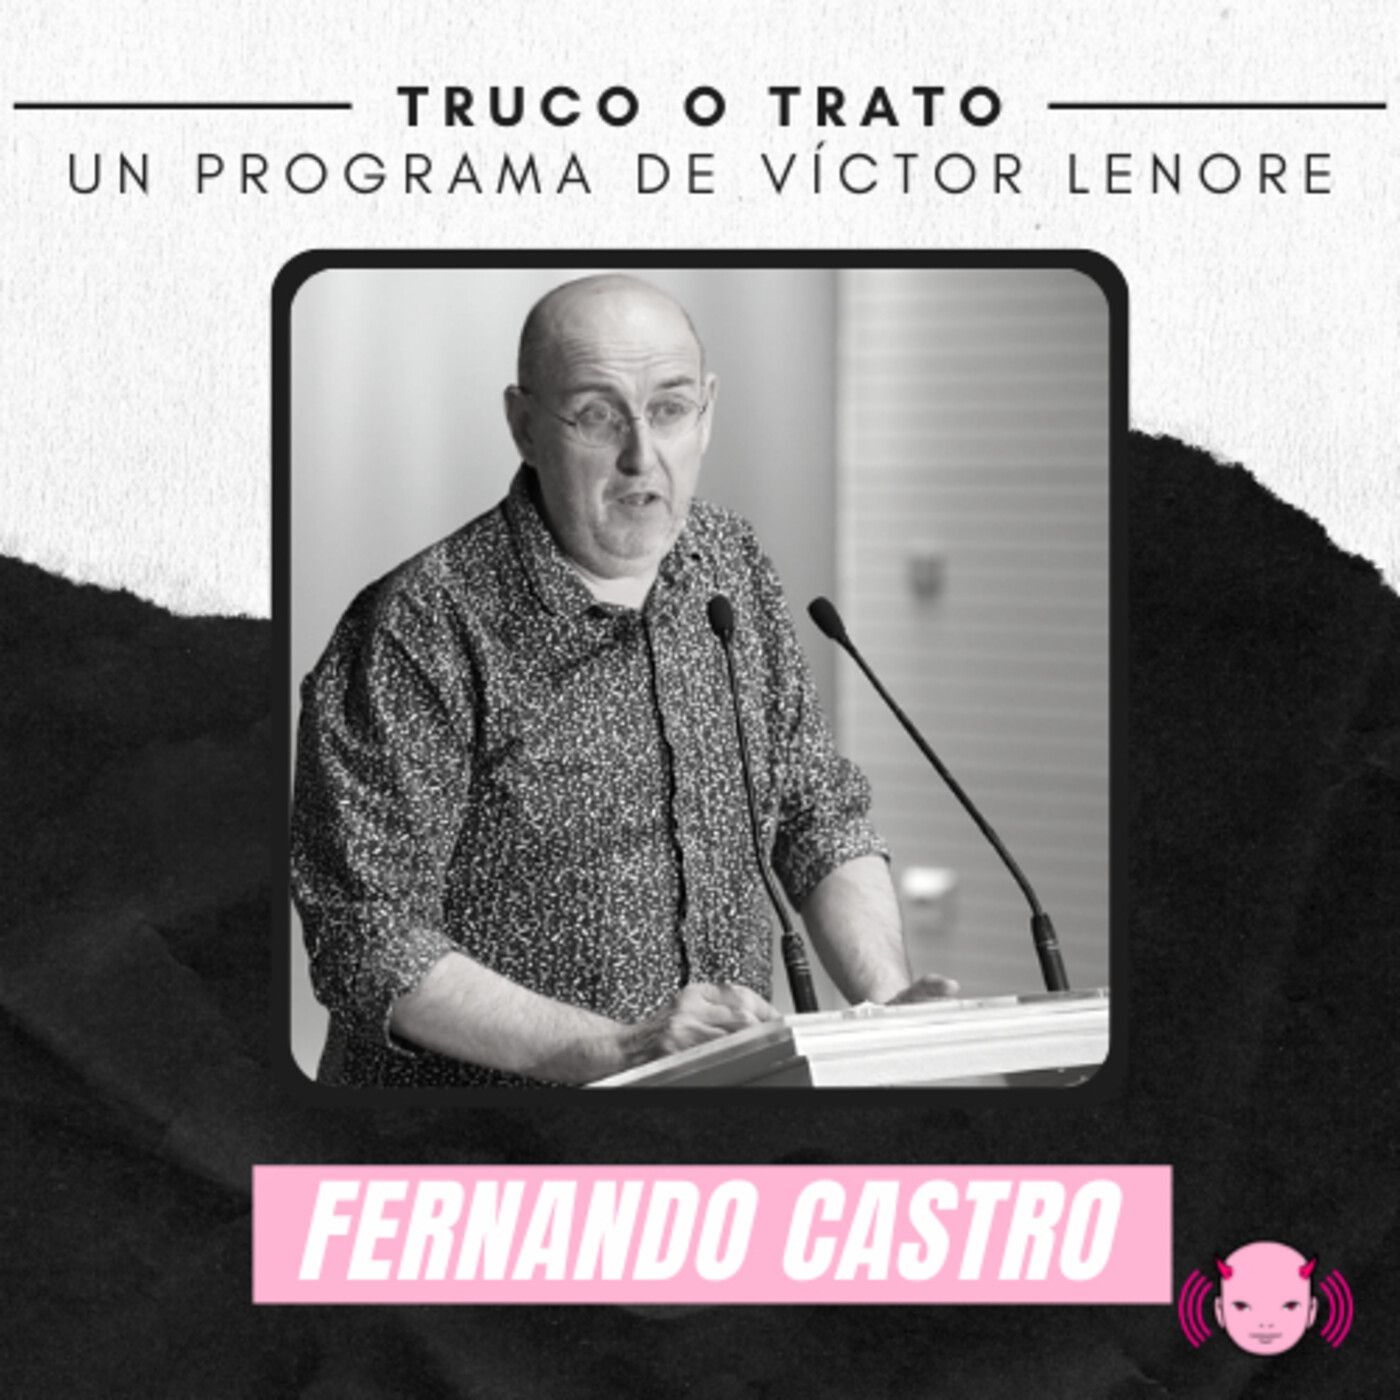 Truco o trato con Víctor Lenore #22: Fernando Castro